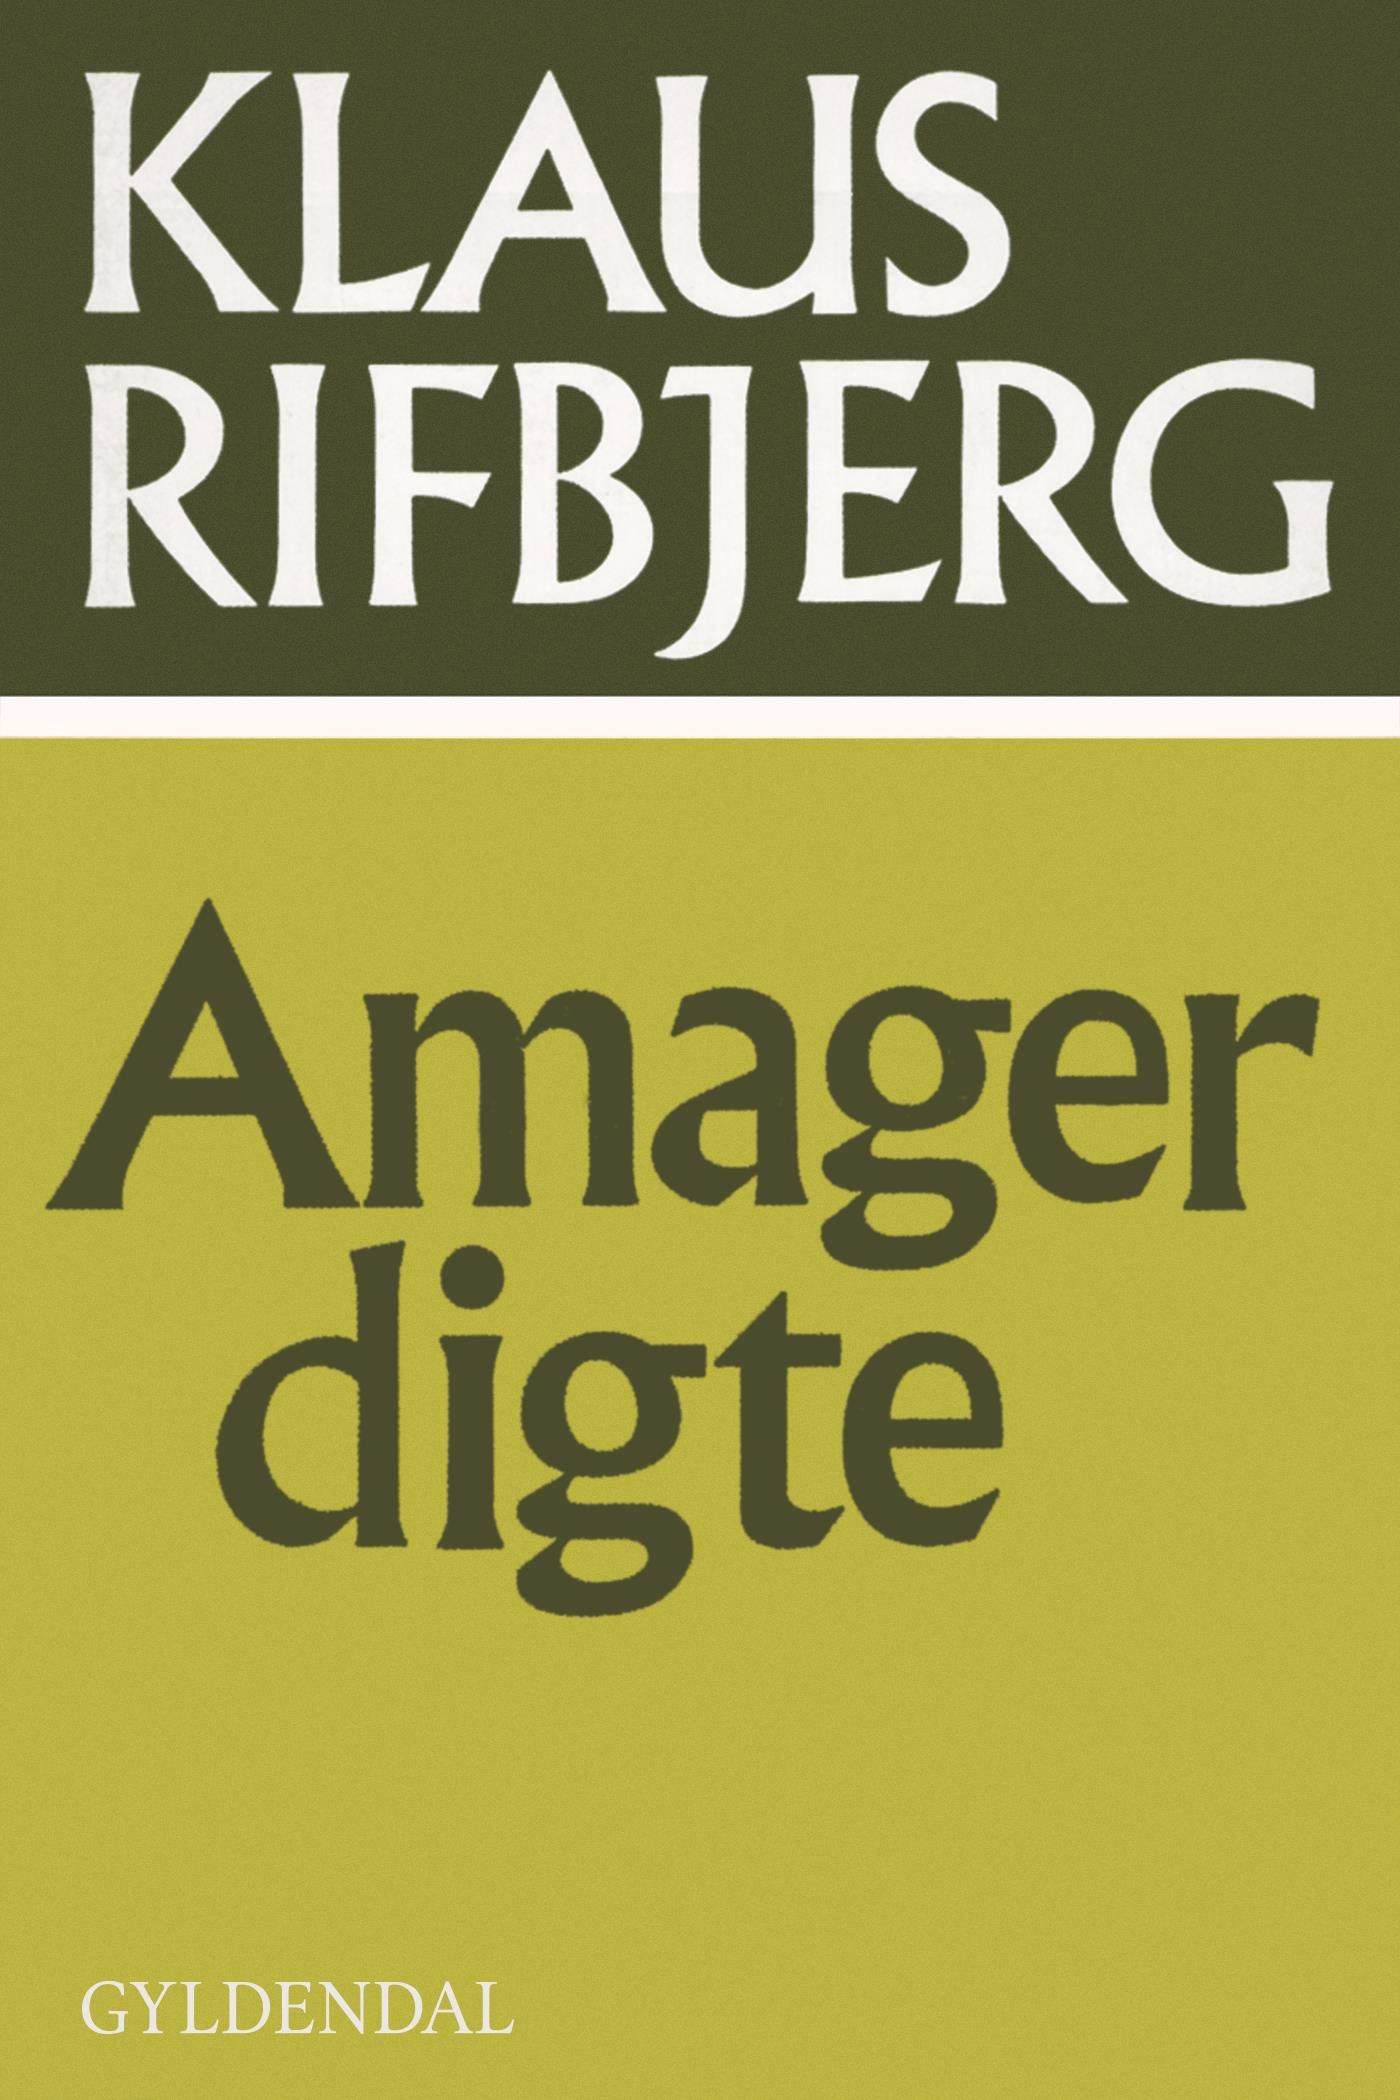 Amagerdigte, eBook by Klaus Rifbjerg